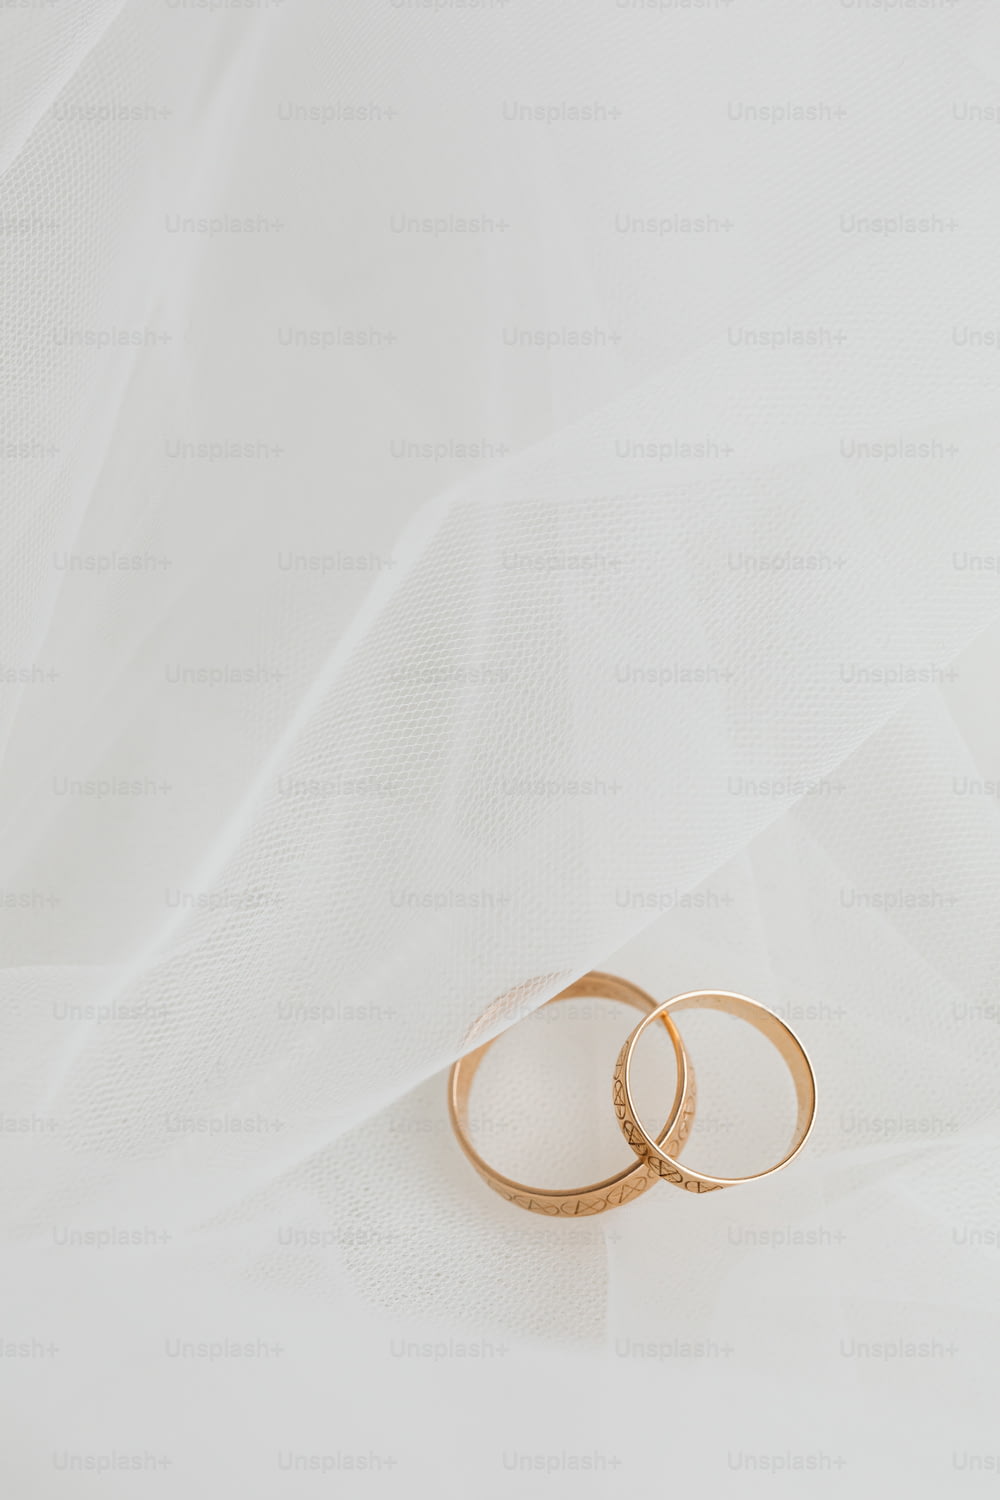 白い背景に2つの金色の結婚指輪